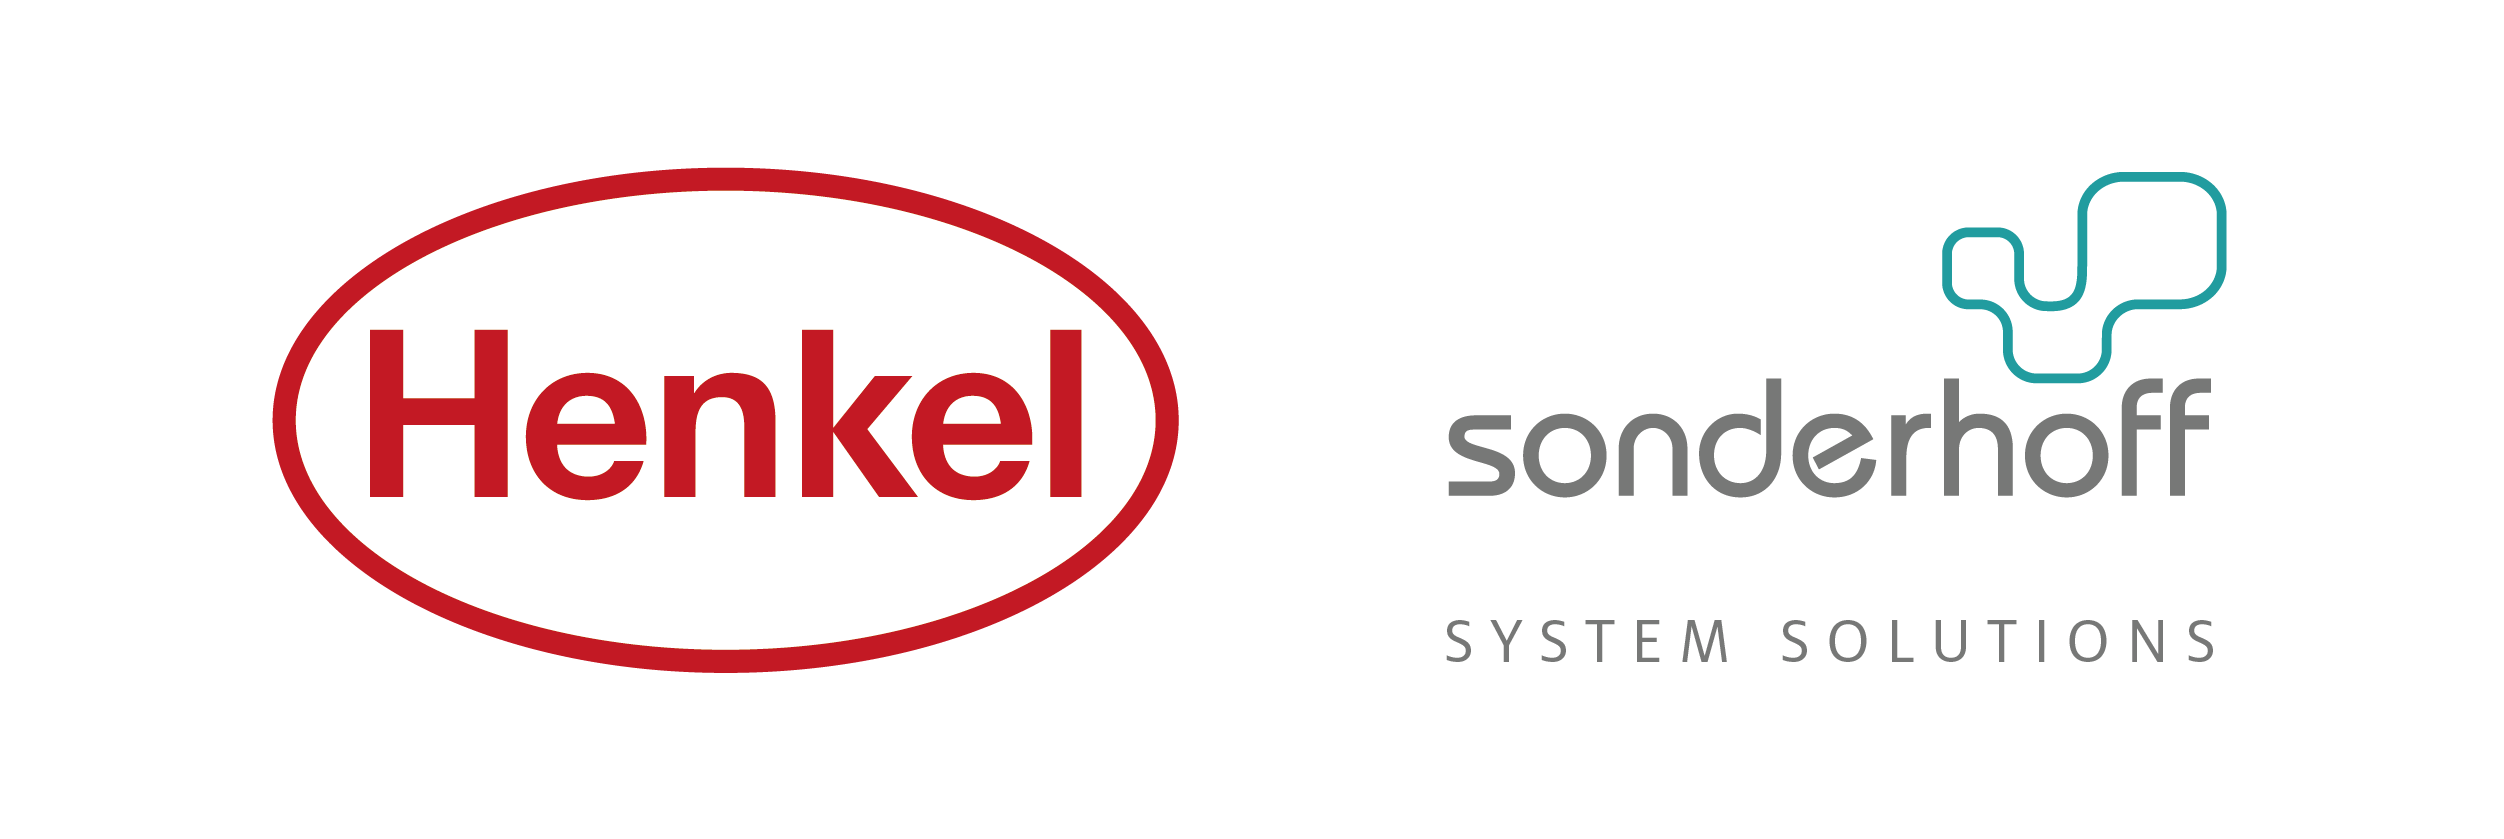 Henkel AG & Co. KGaA | Sonderhoff Technologie